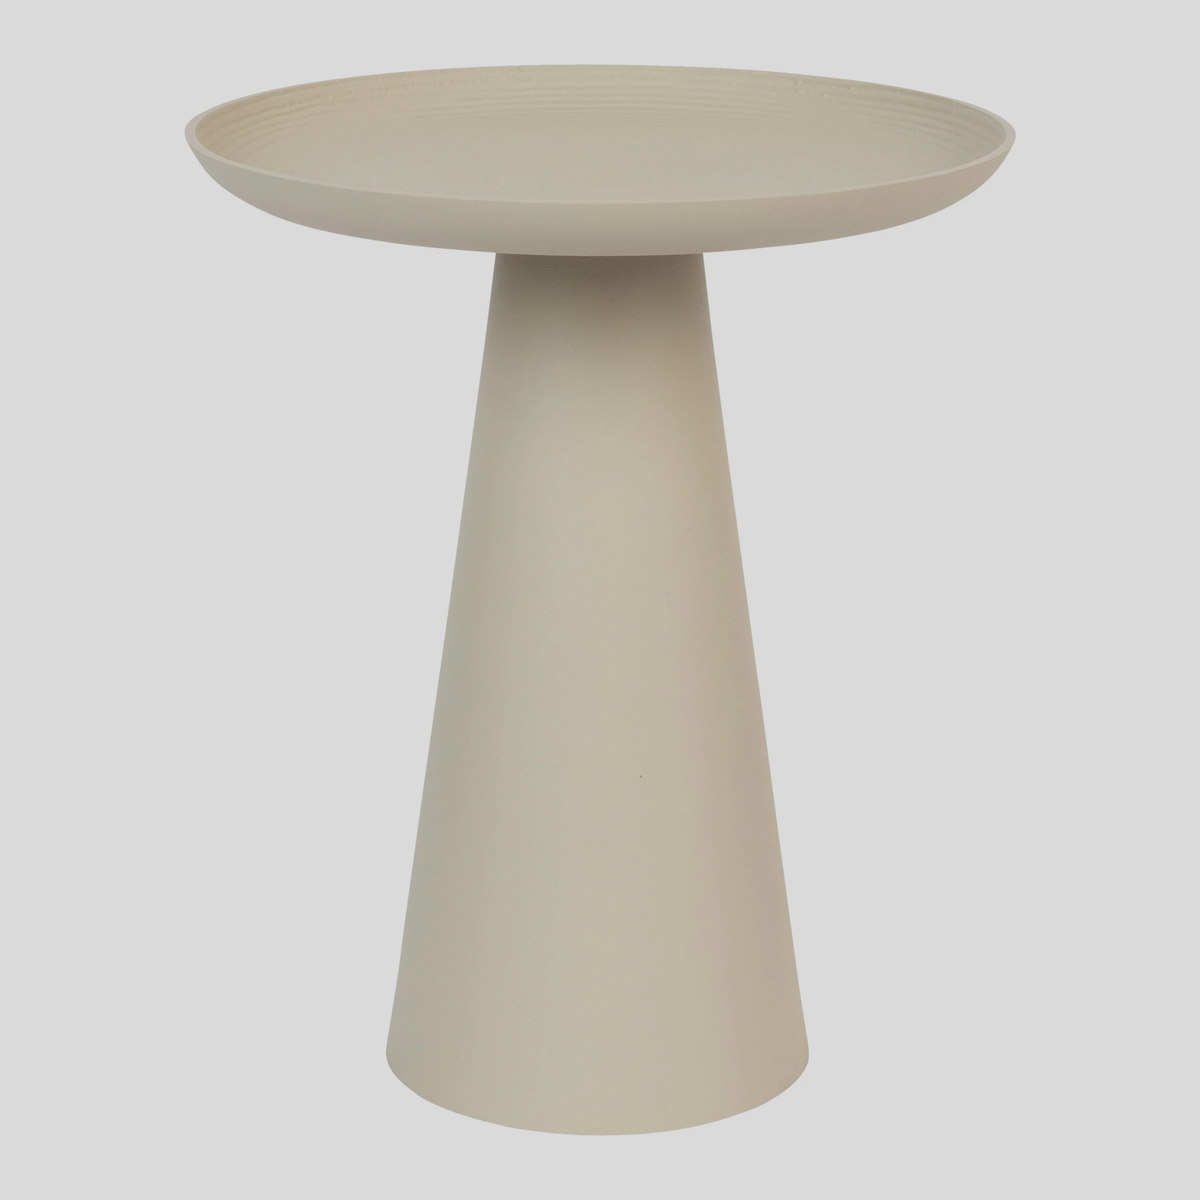 De bijzettafel Tira van Vestbjerg heeft wat weg van een paddenstoel. Het reliëf van het tafelblad accentueert de ronde vorm van de tafel. 